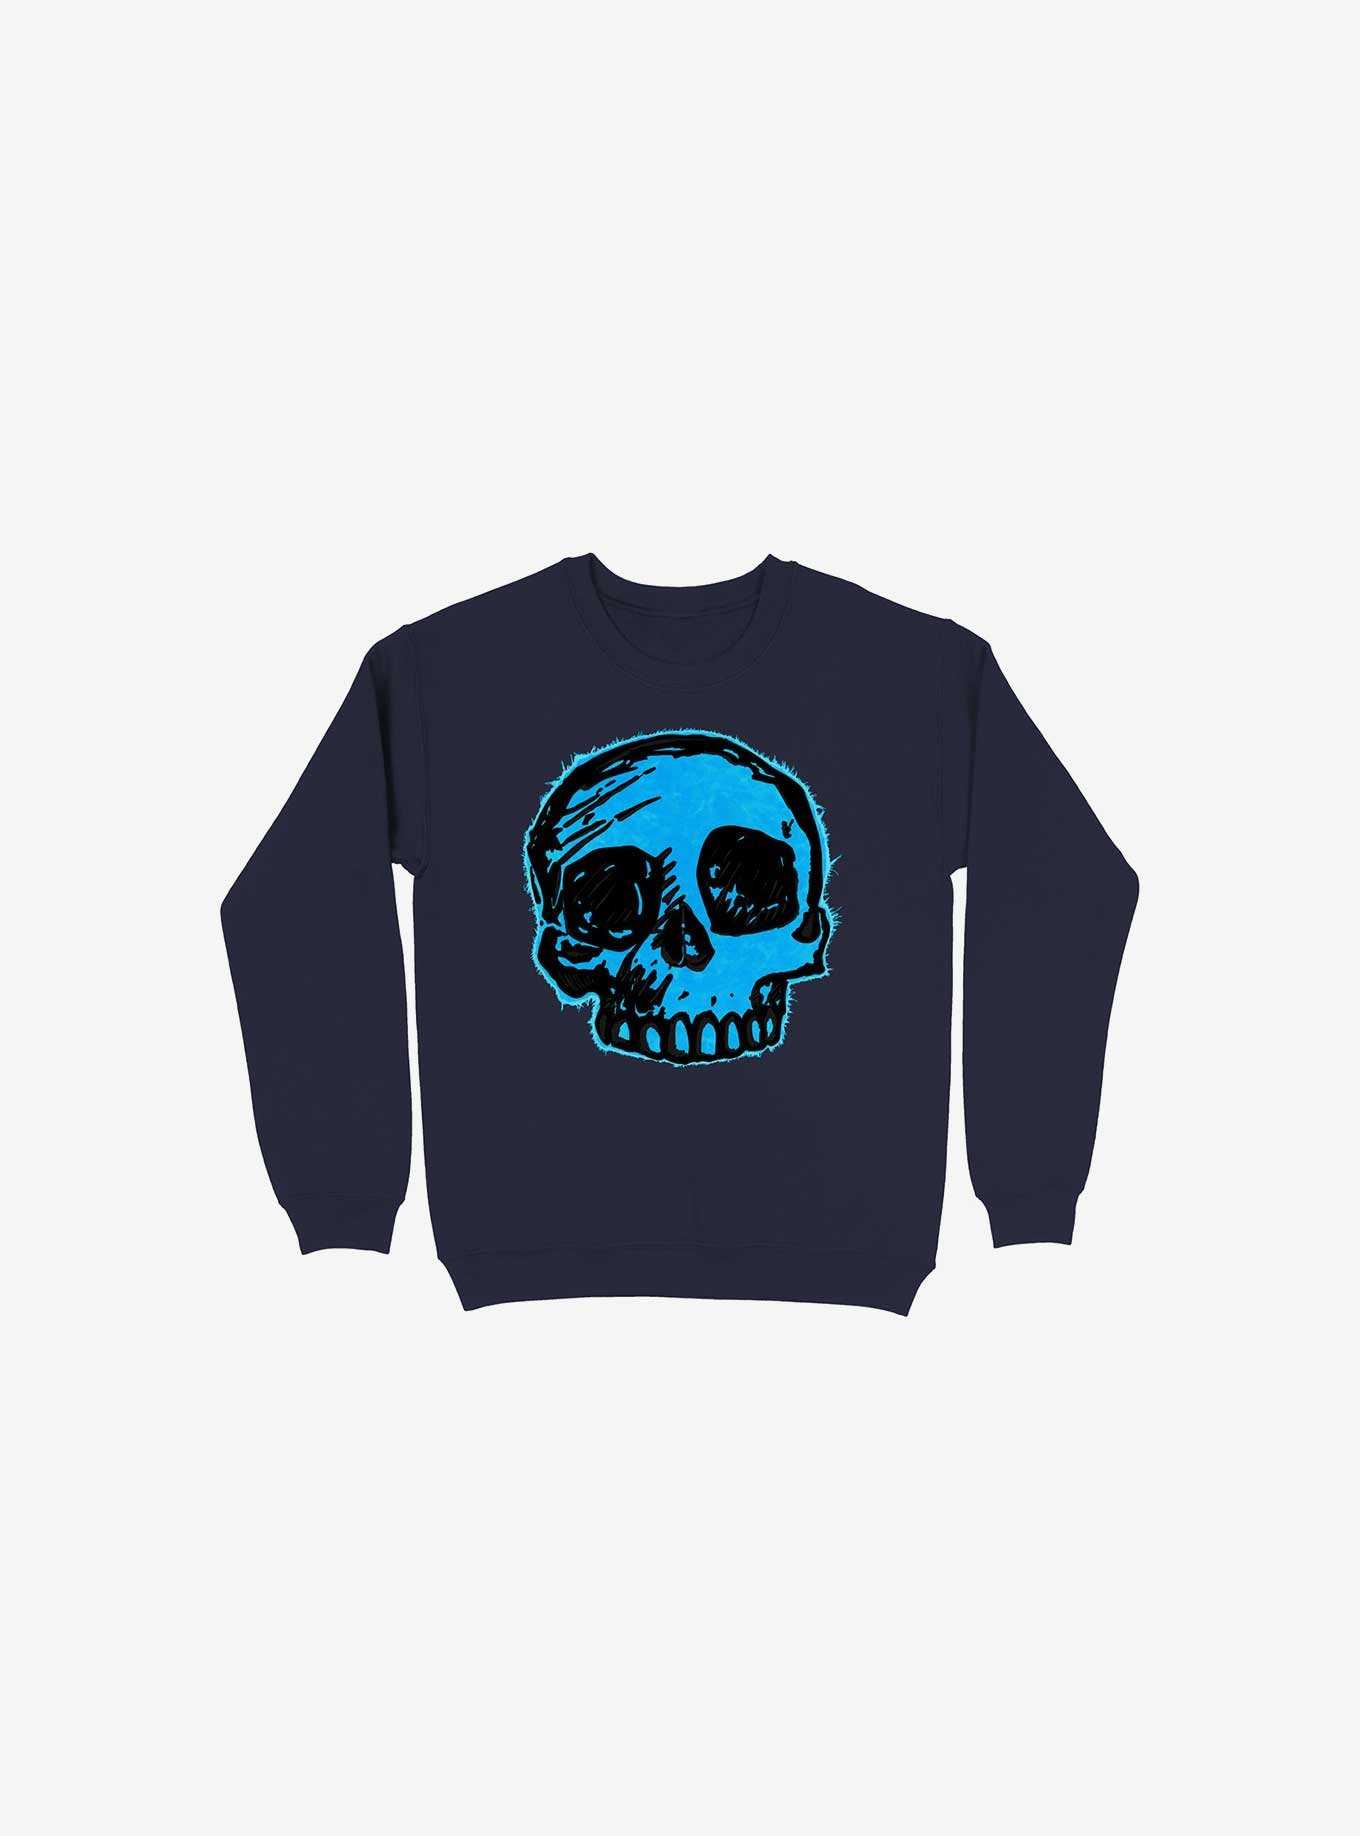 Blue Skull Navy Blue Sweatshirt, , hi-res